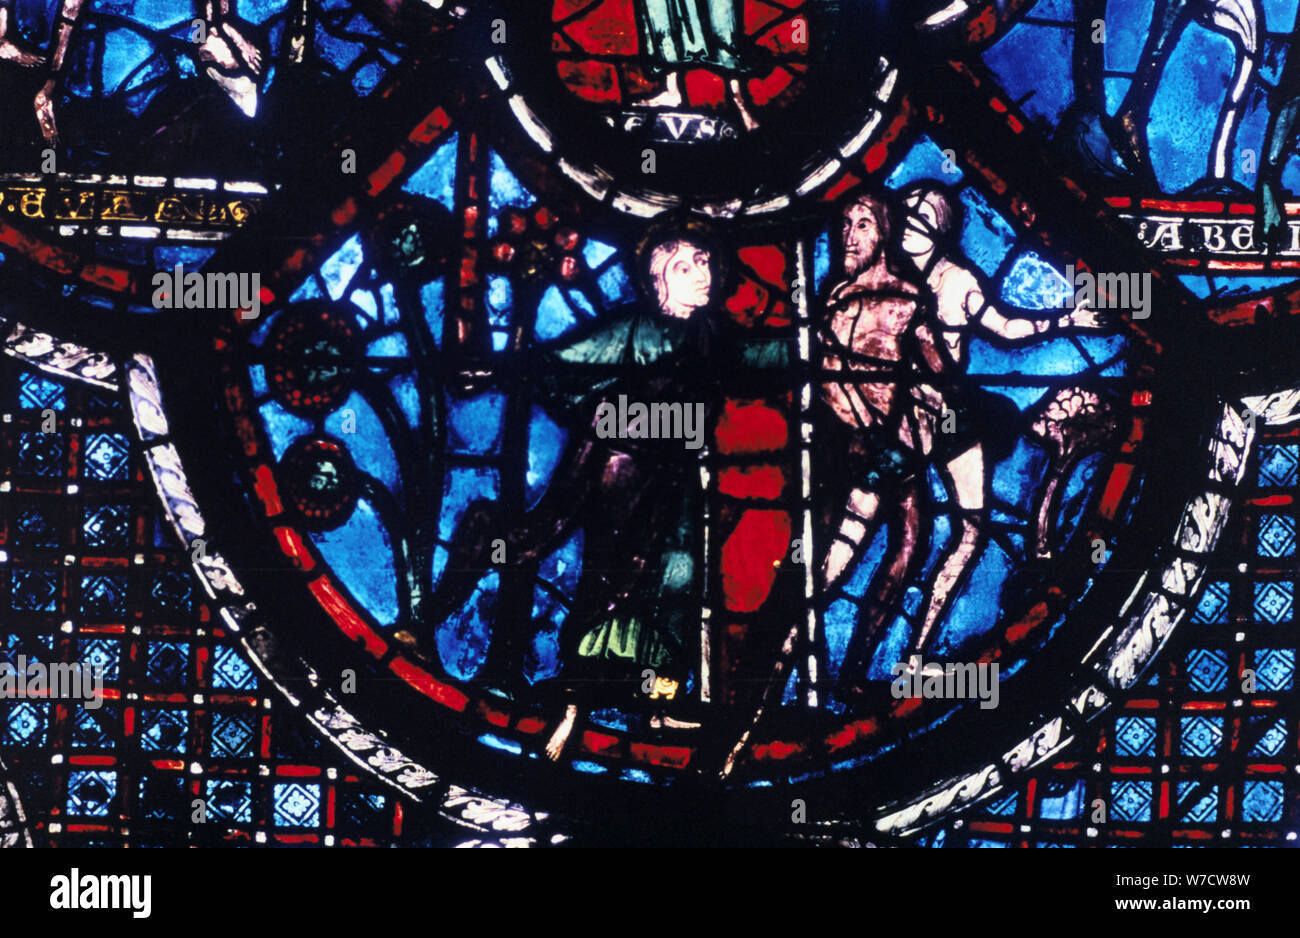 L'expulsion de l'Eden, vitrail, Cathédrale de Chartres, France, 1205-1215. Artiste : Inconnu Banque D'Images